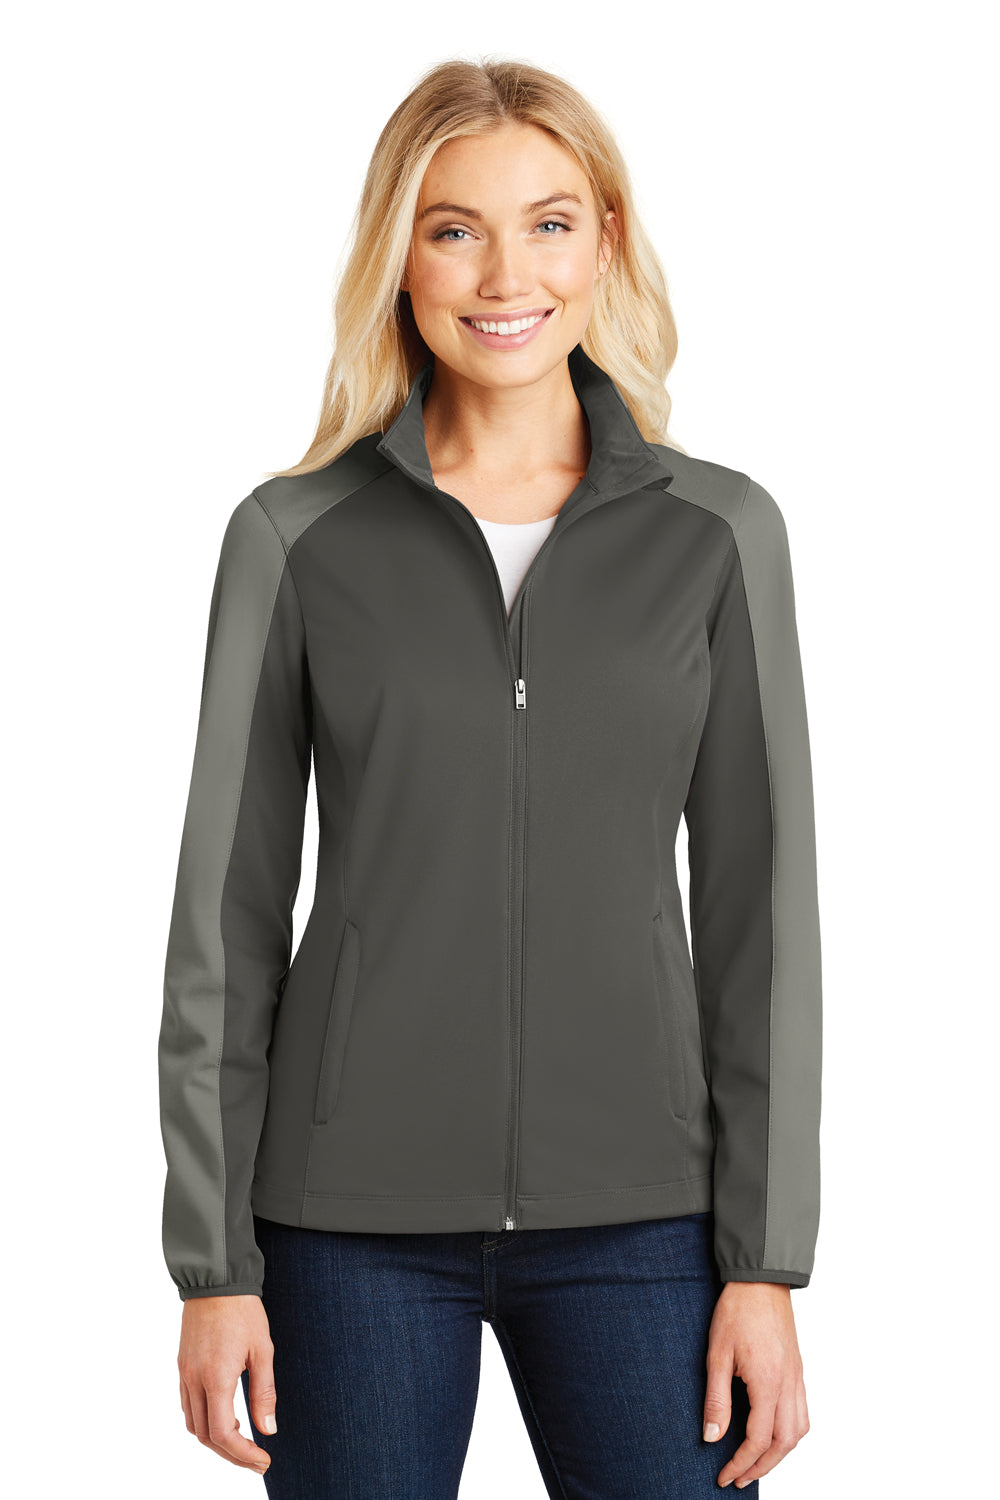 Port Authority L718 Womens Active Wind & Water Resistant Full Zip Jacket Grey Steel/Grey Front